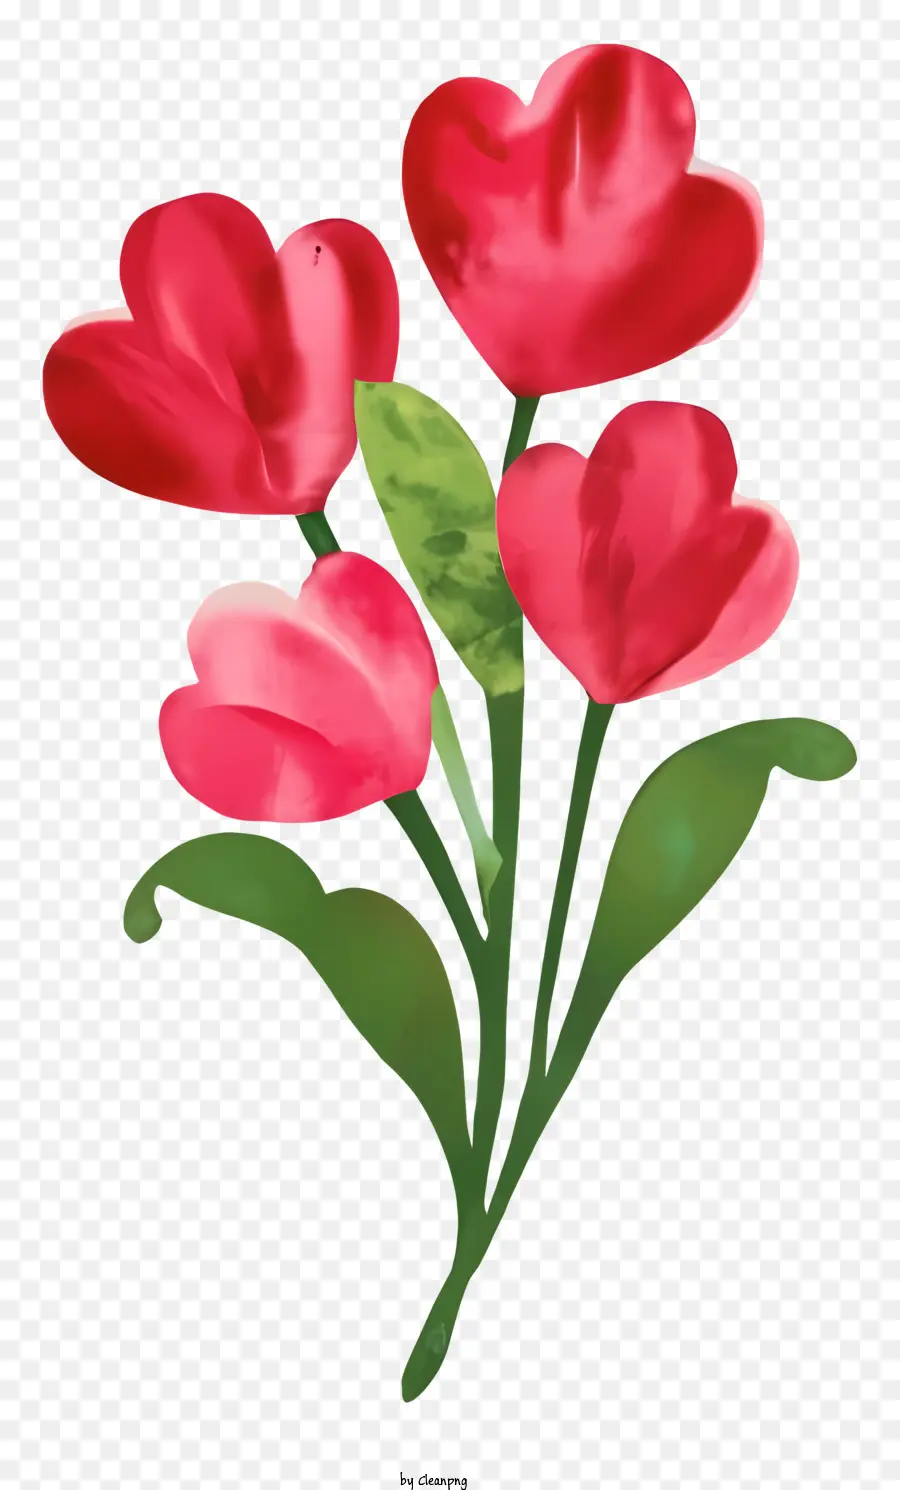 Bó hoa - Hoa tulip đỏ được sắp xếp với lá xanh trong bó hoa